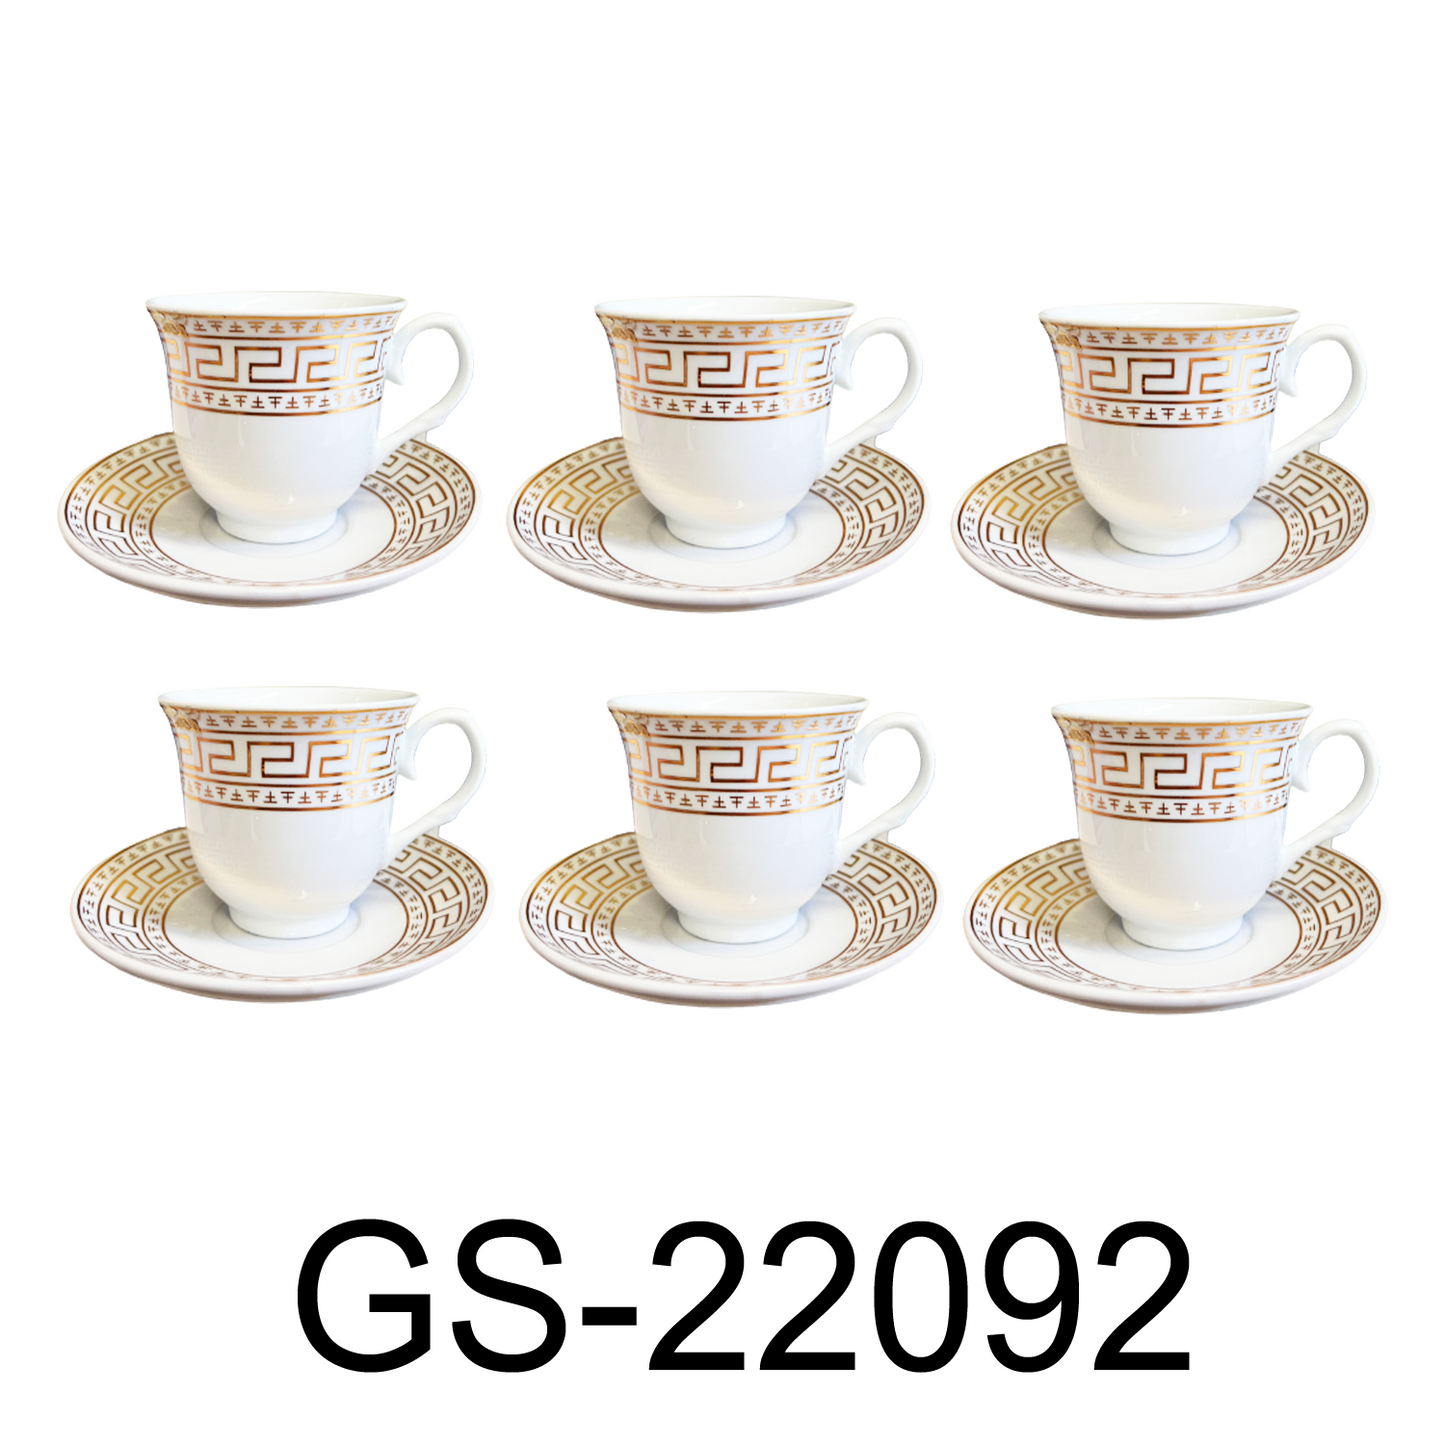 12 PC White & Gold Fancy Tea Cup Set